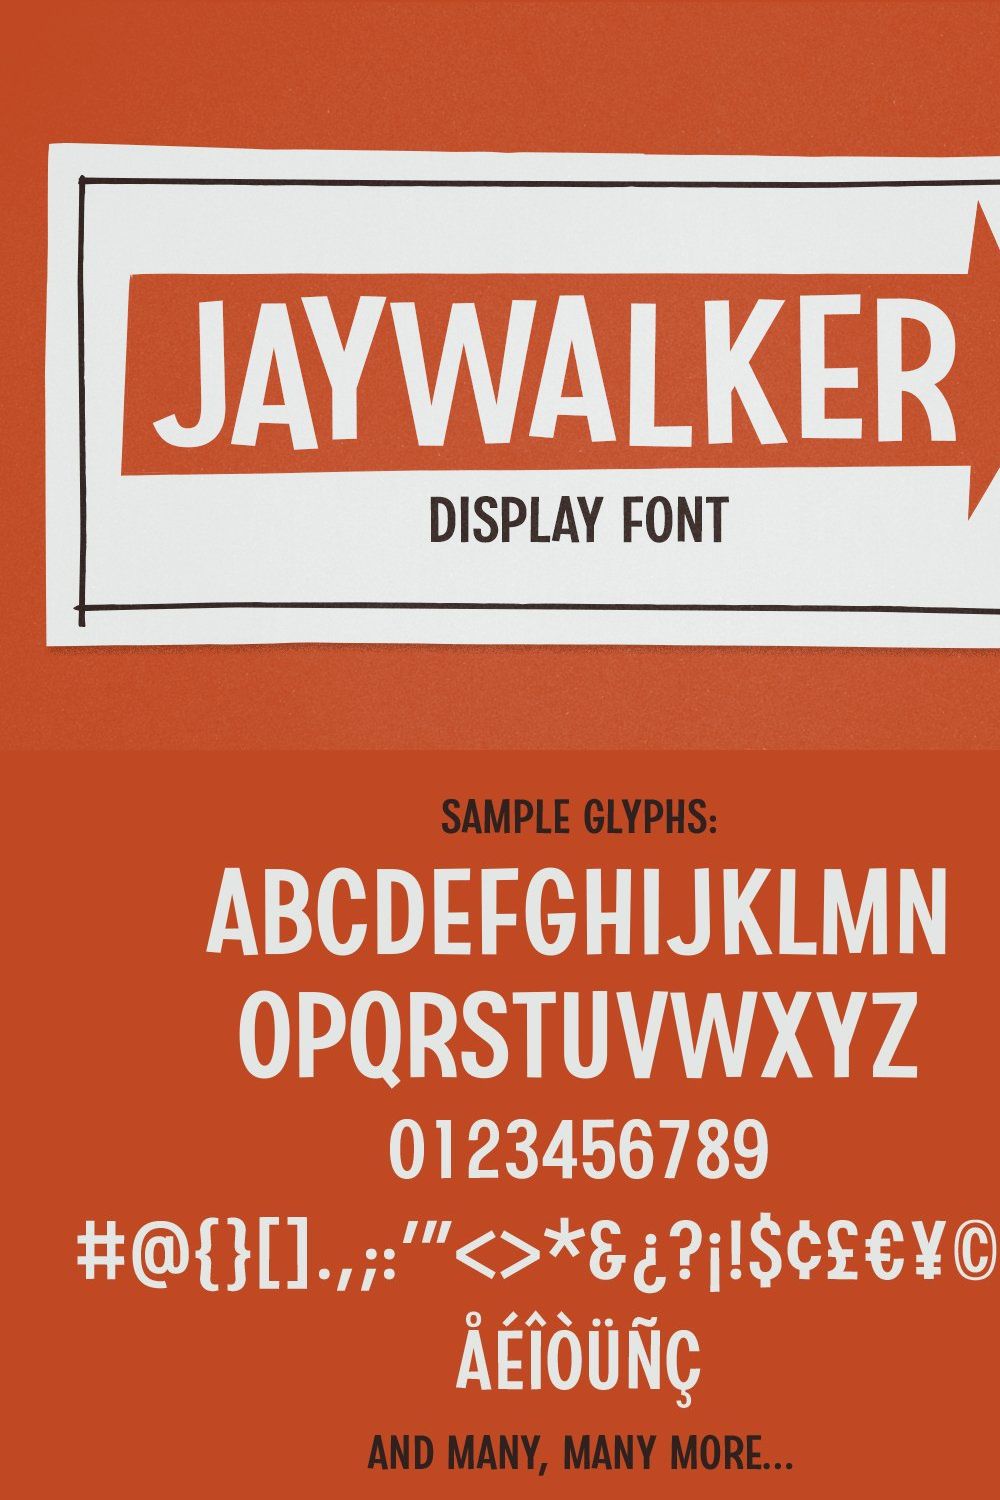 Jaywalker - Display Font pinterest preview image.